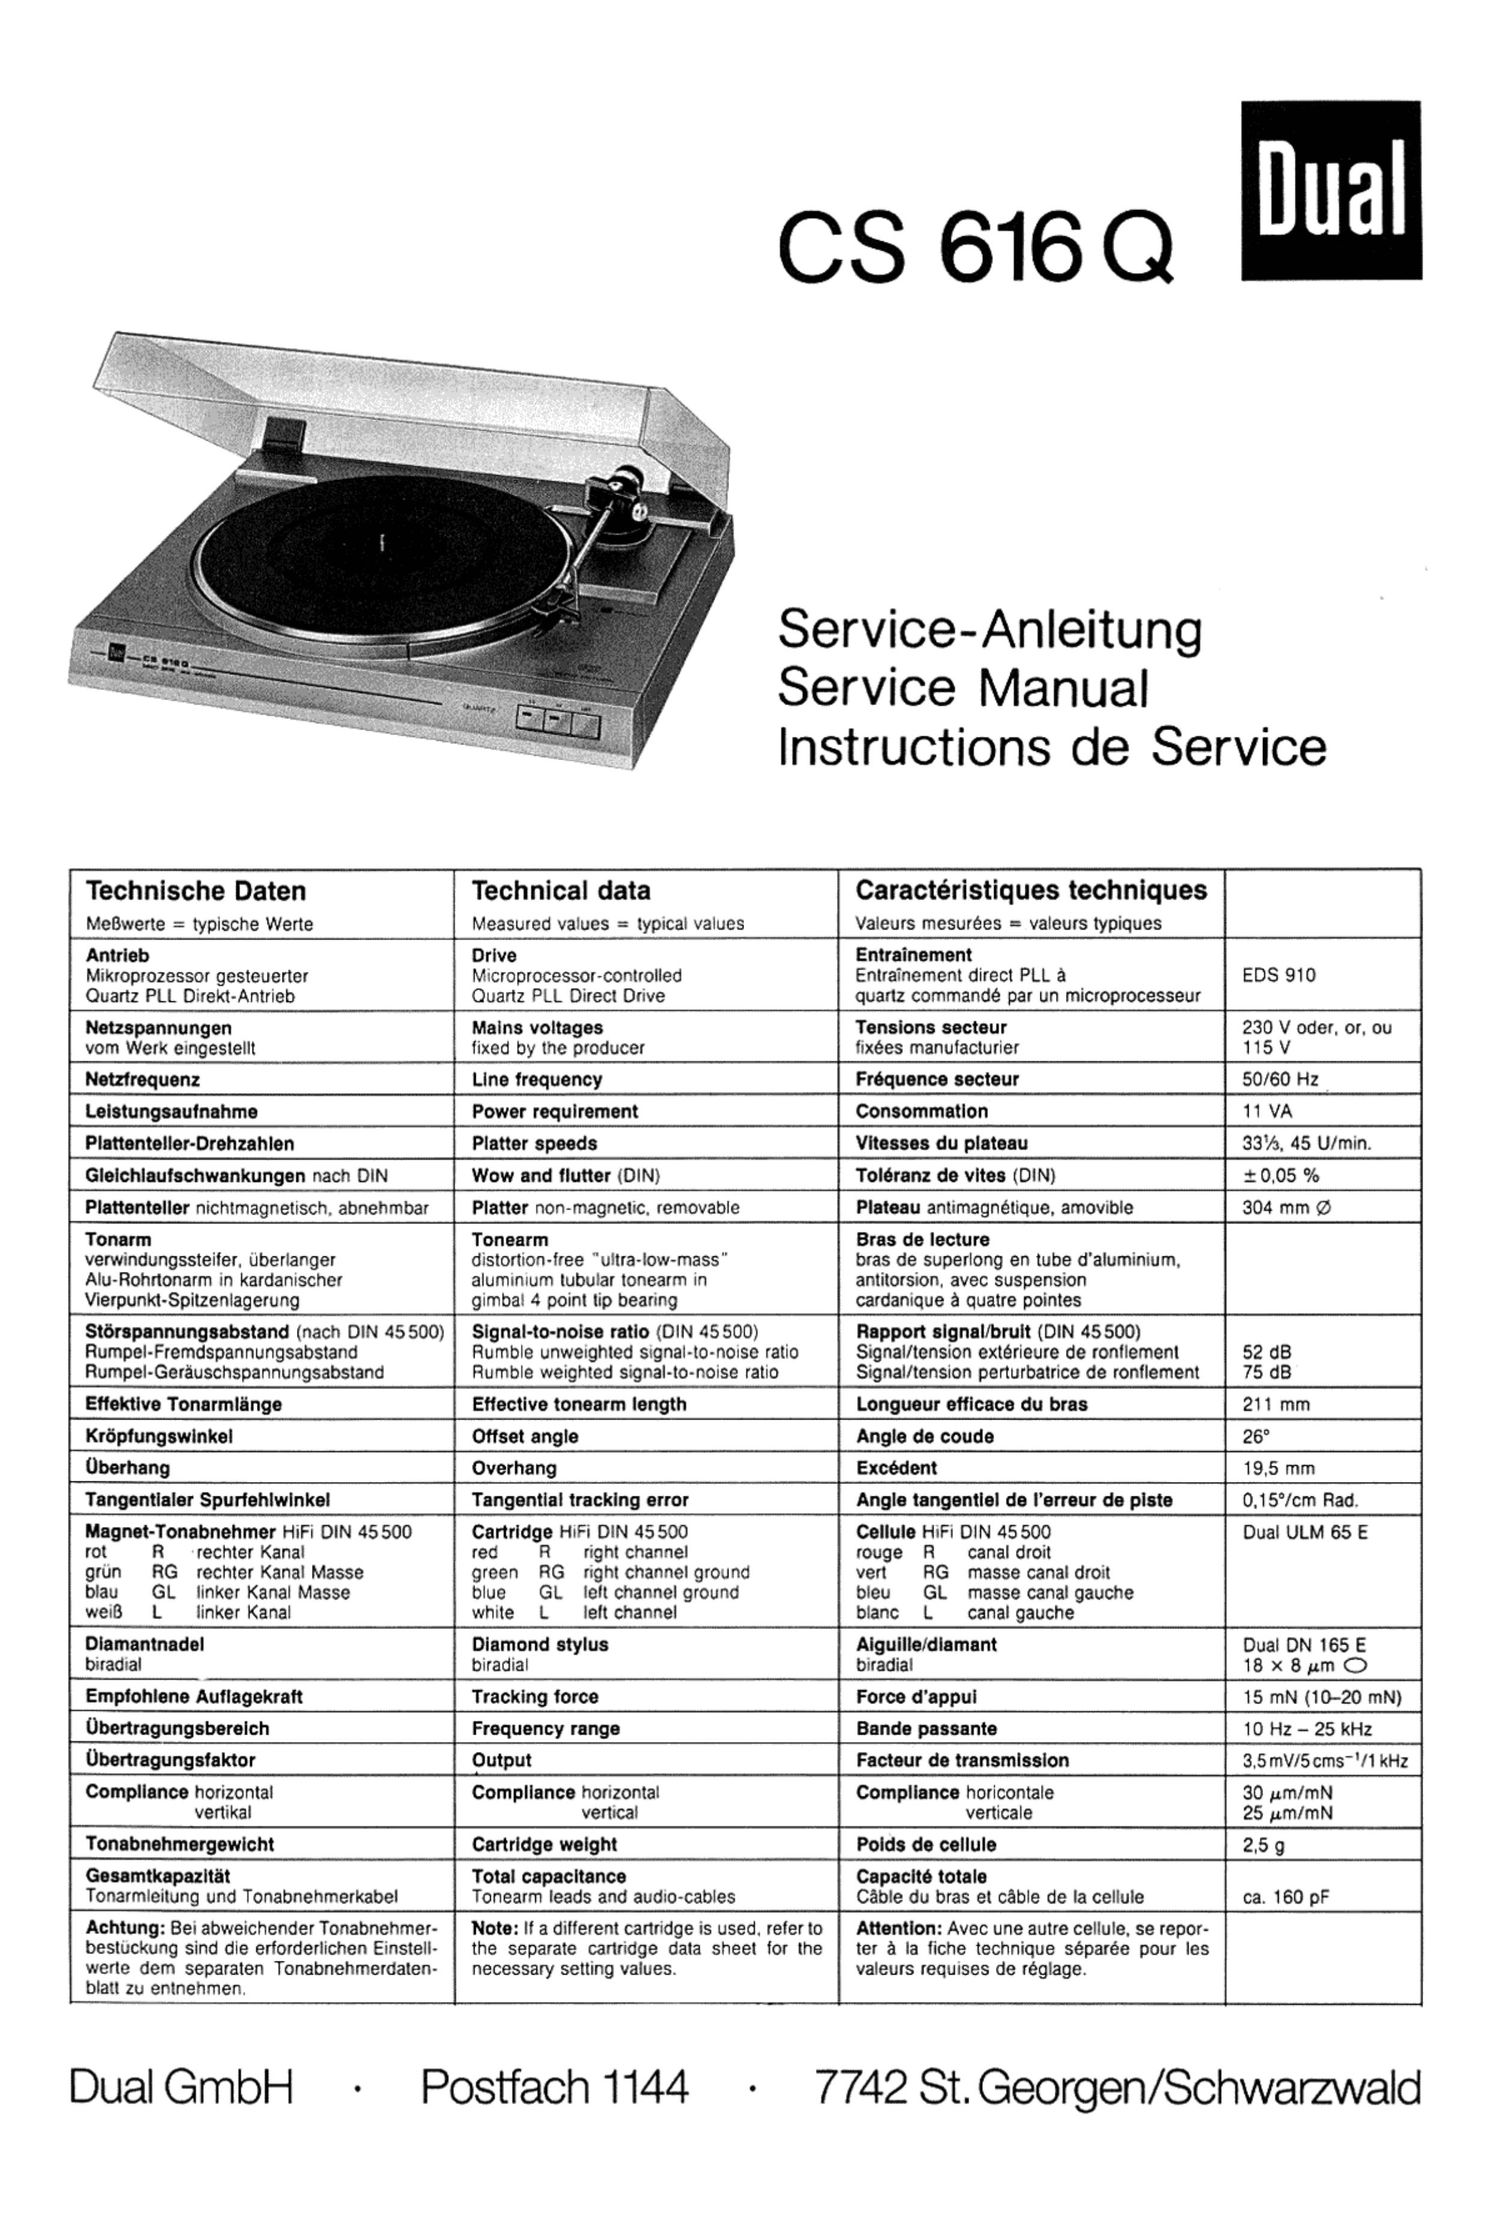 Dual CS 616 Q Service Manual